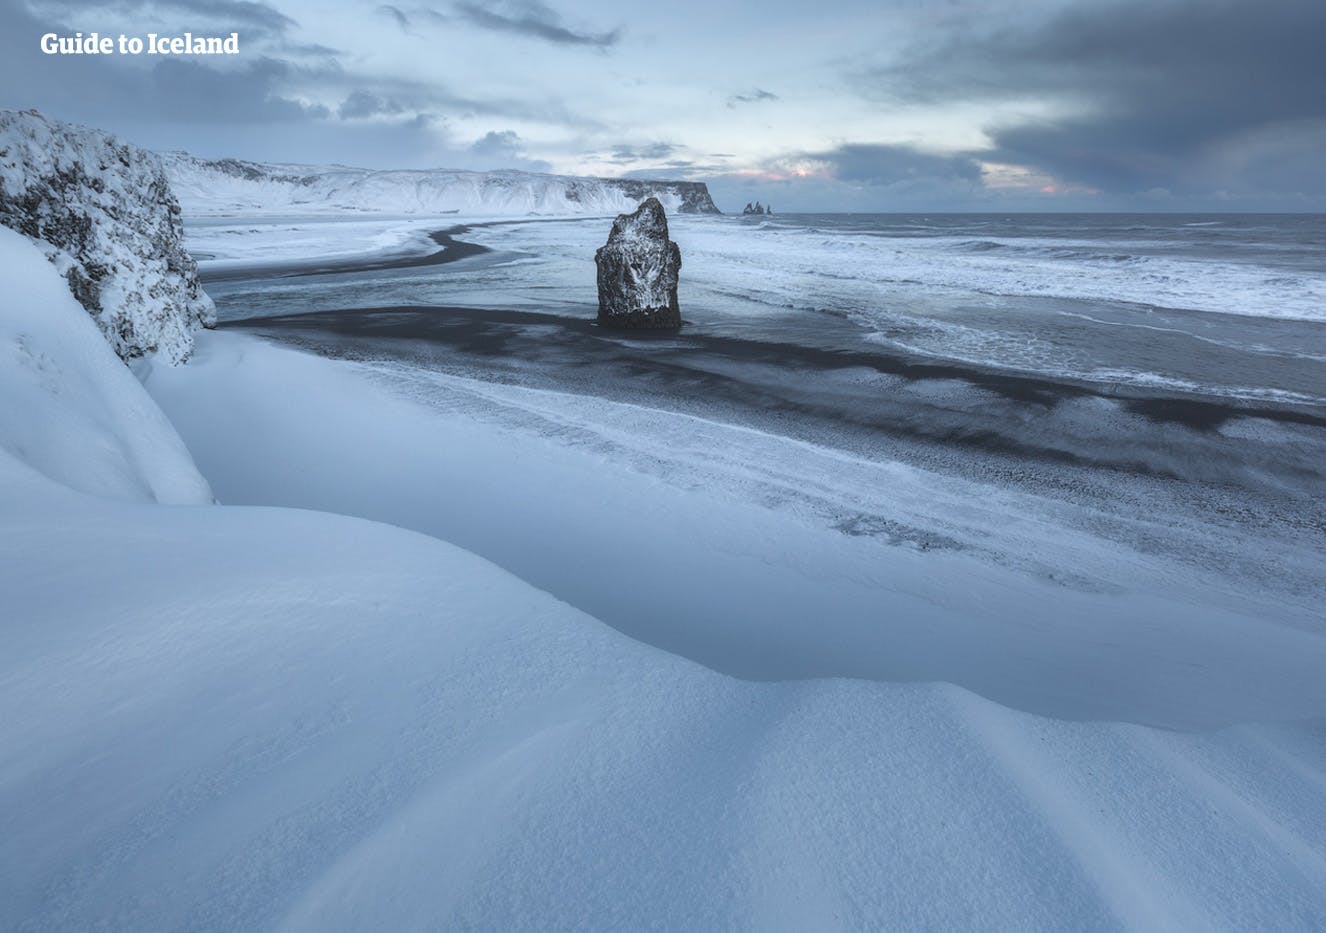 Les sables noirs des plages de la côte sud de l'Islande dans les profondeurs de l'hiver ne sont visibles que là où la mer enlève la neige.